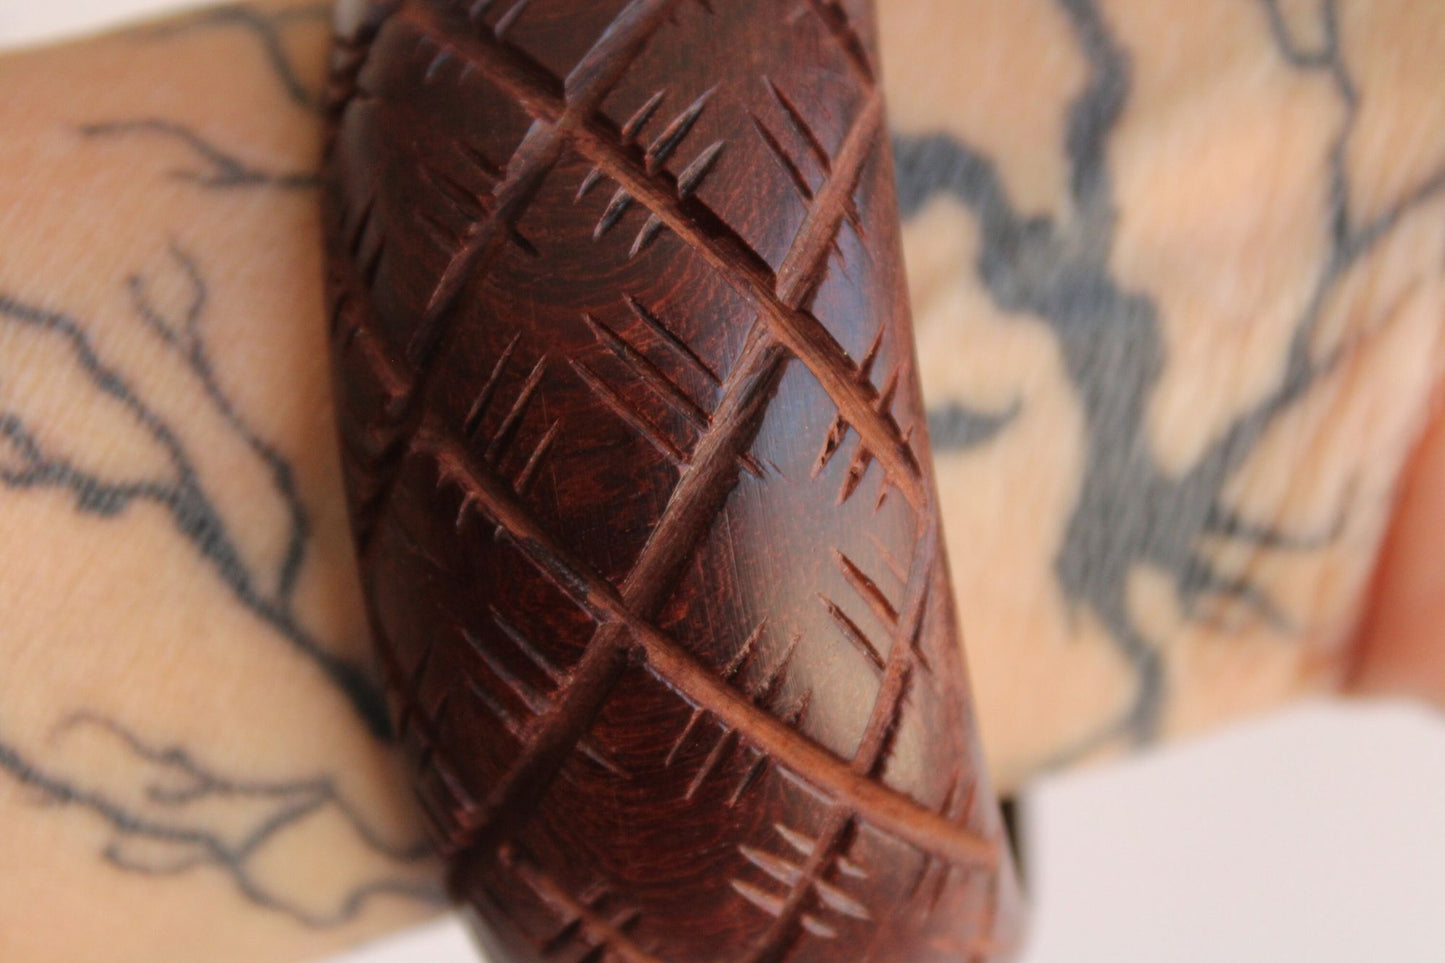 Vintage Brown Wood Carved Bangle Bracelet, Made in India